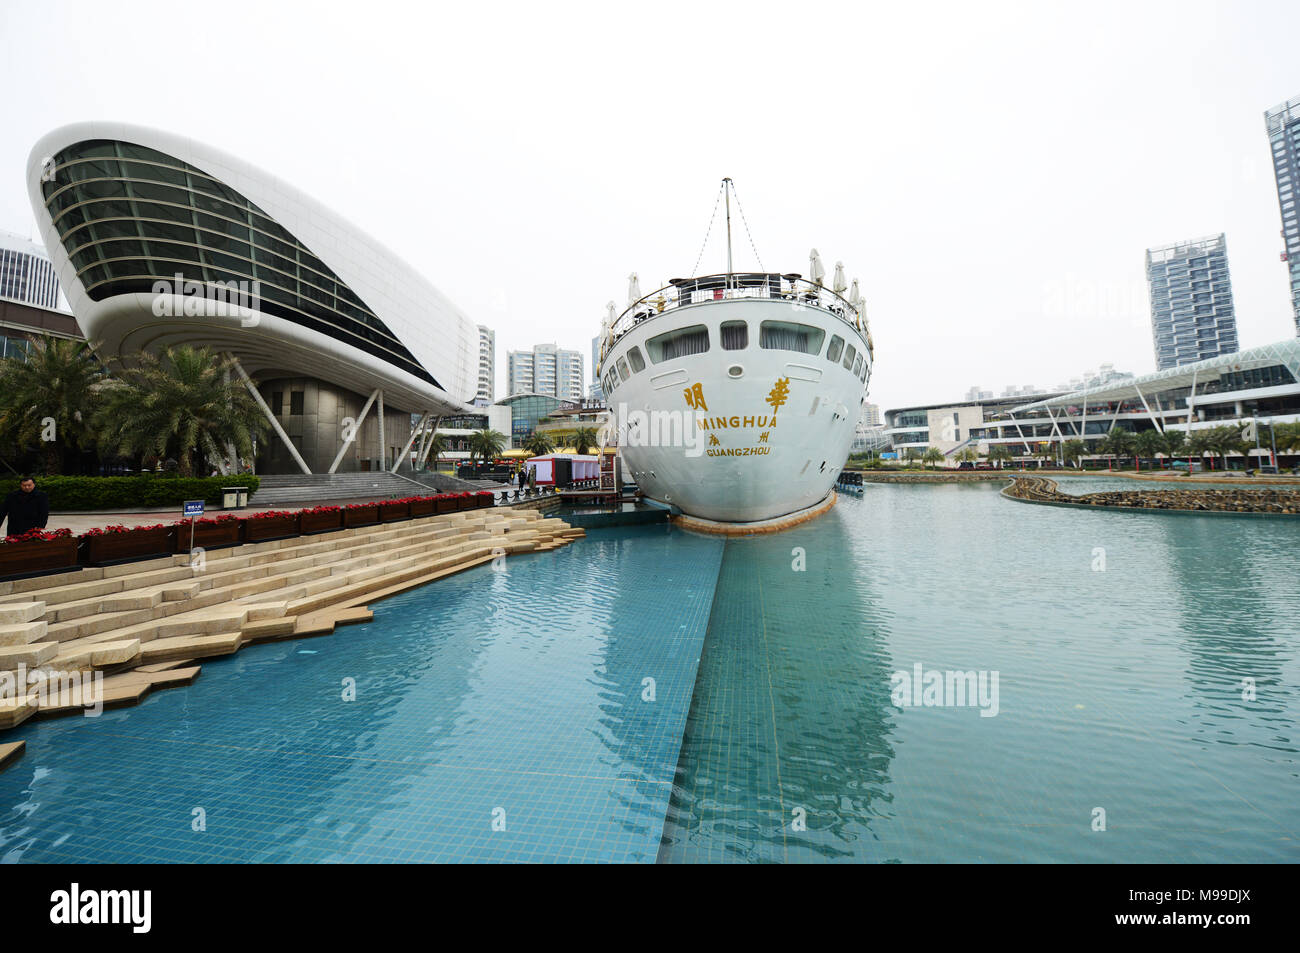 Die Minghua Schiff an das neue Sea Wold plaza Unterhaltung Zone. Stockfoto